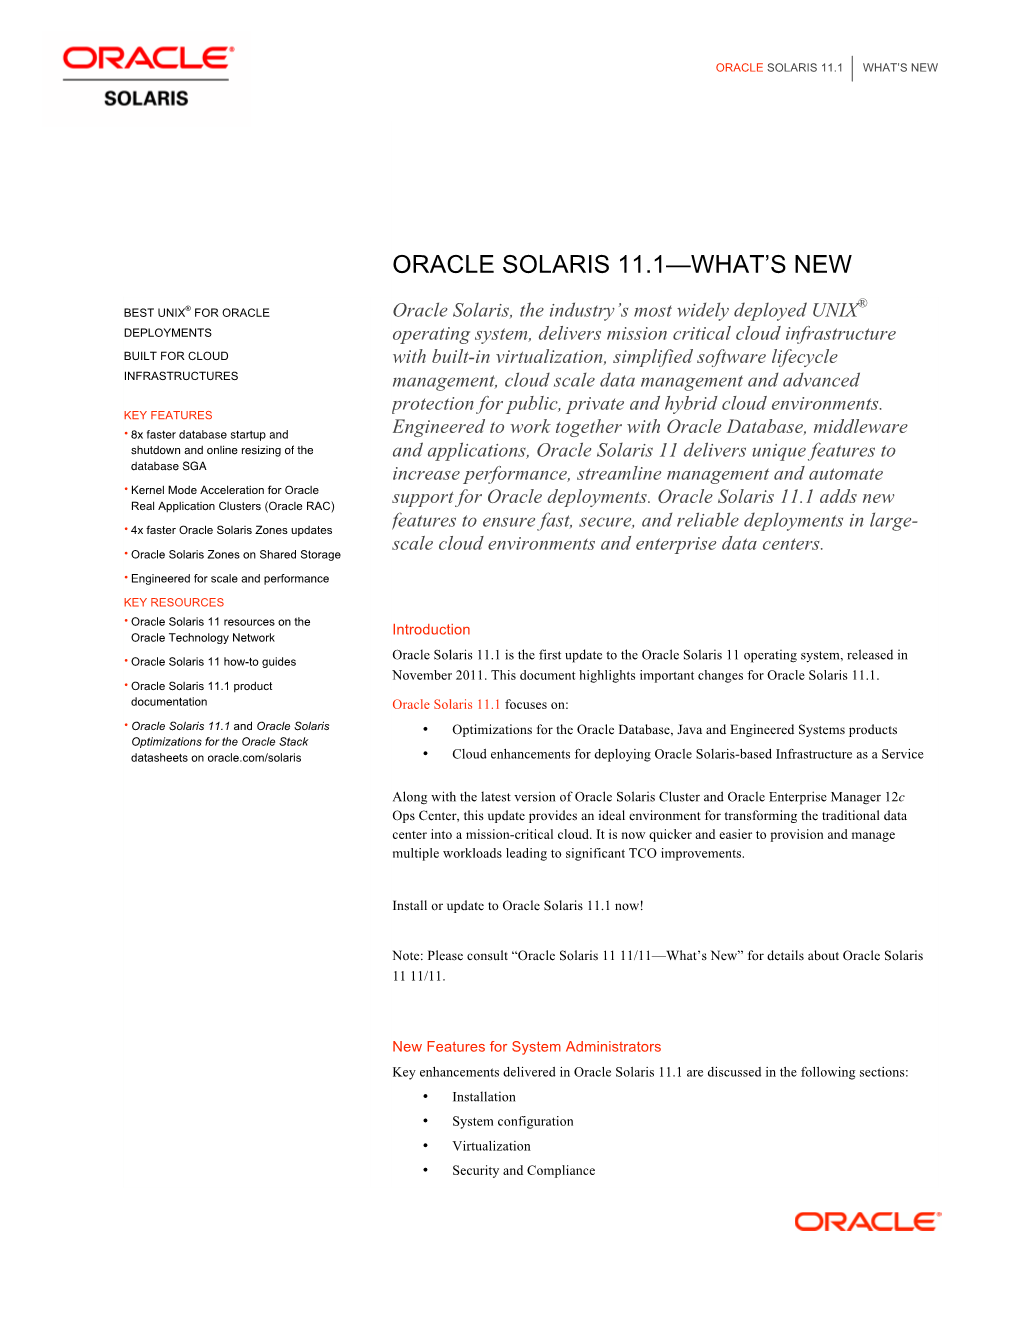 Oracle Solaris 11.1—What's